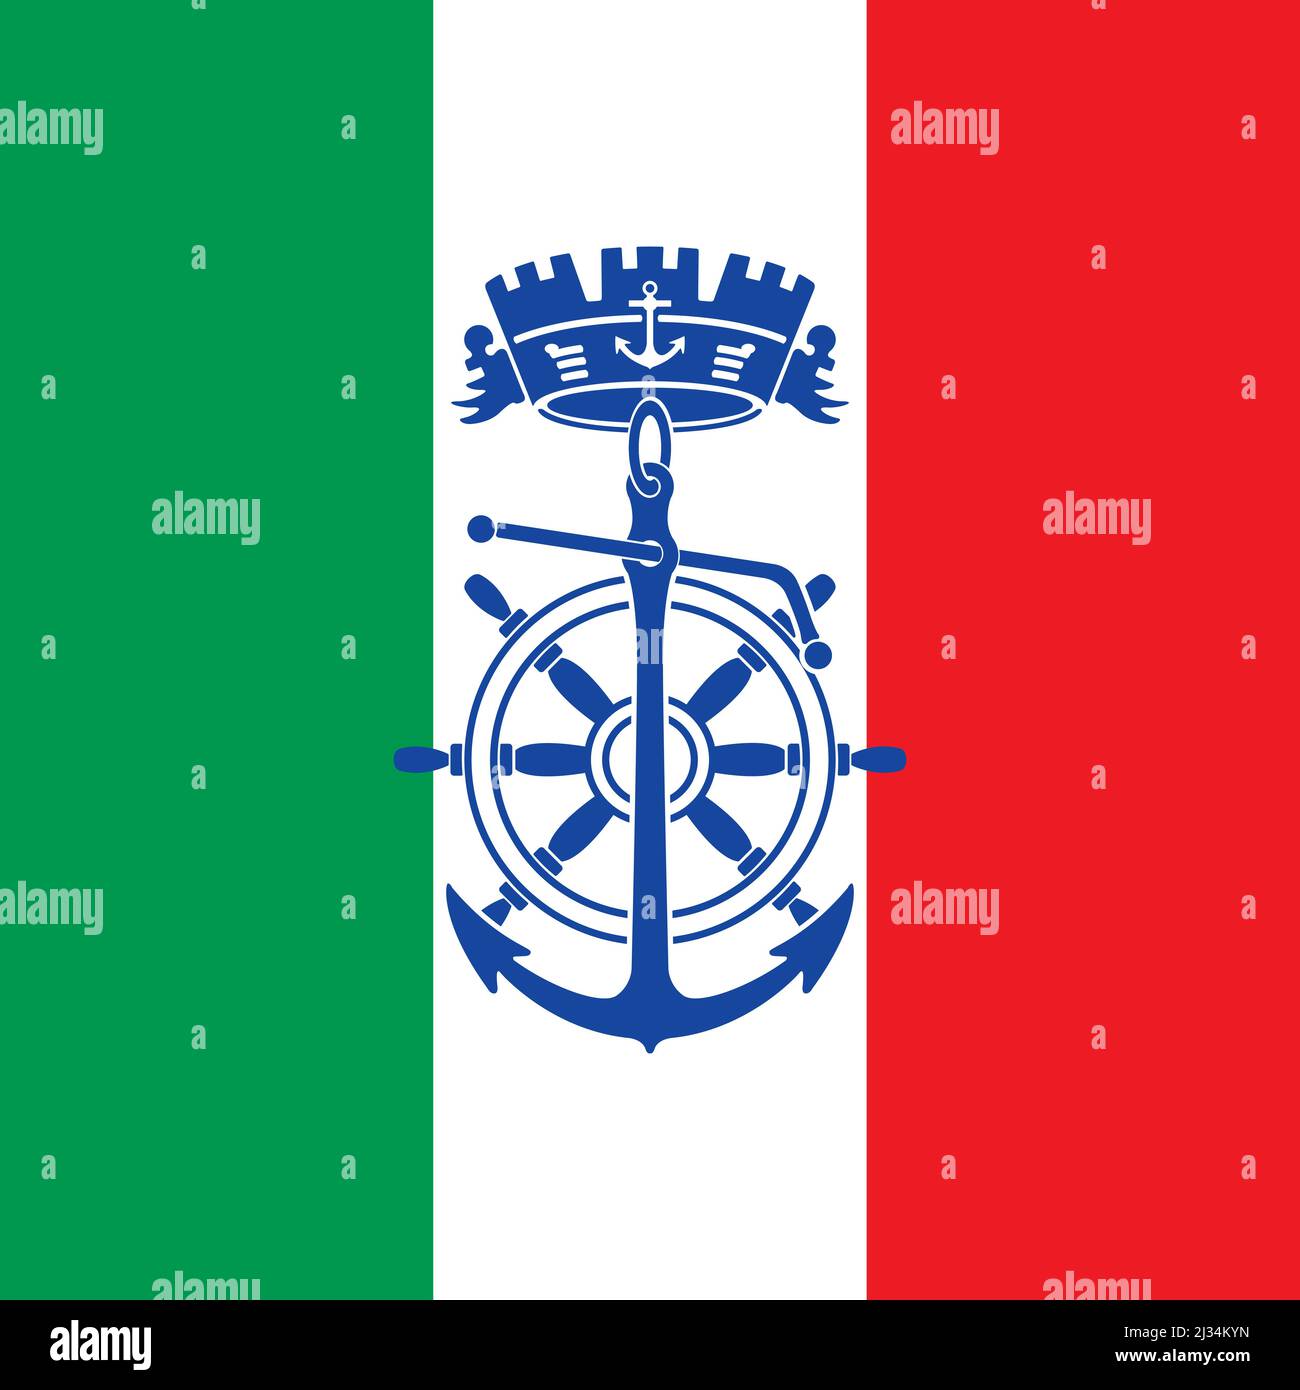 Militär Naval Academy von Livorno Wappen auf der Flagge, italienische Marine, Vektor-Illustration Stock Vektor